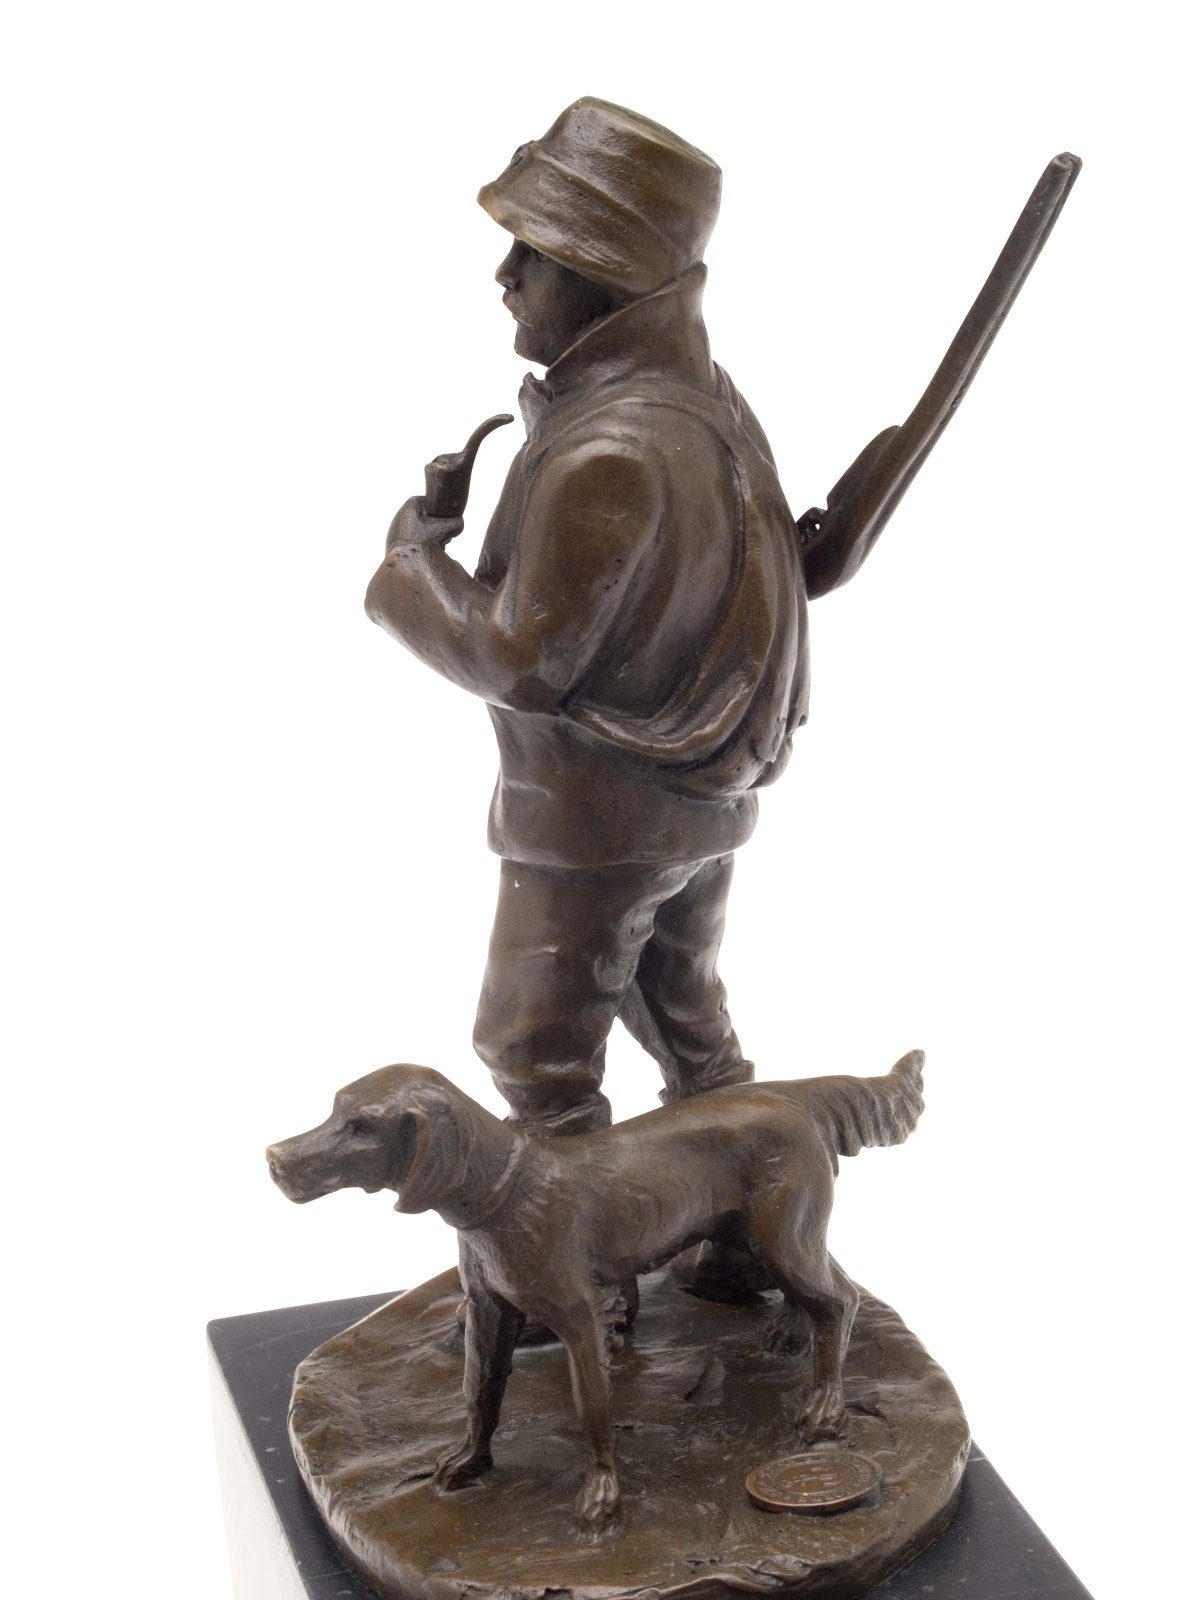 Aubaho Skulptur Hund Antik-Stil hun Bronze Bronzeskulptur Jäger Skulptur Jagd Jagdhund